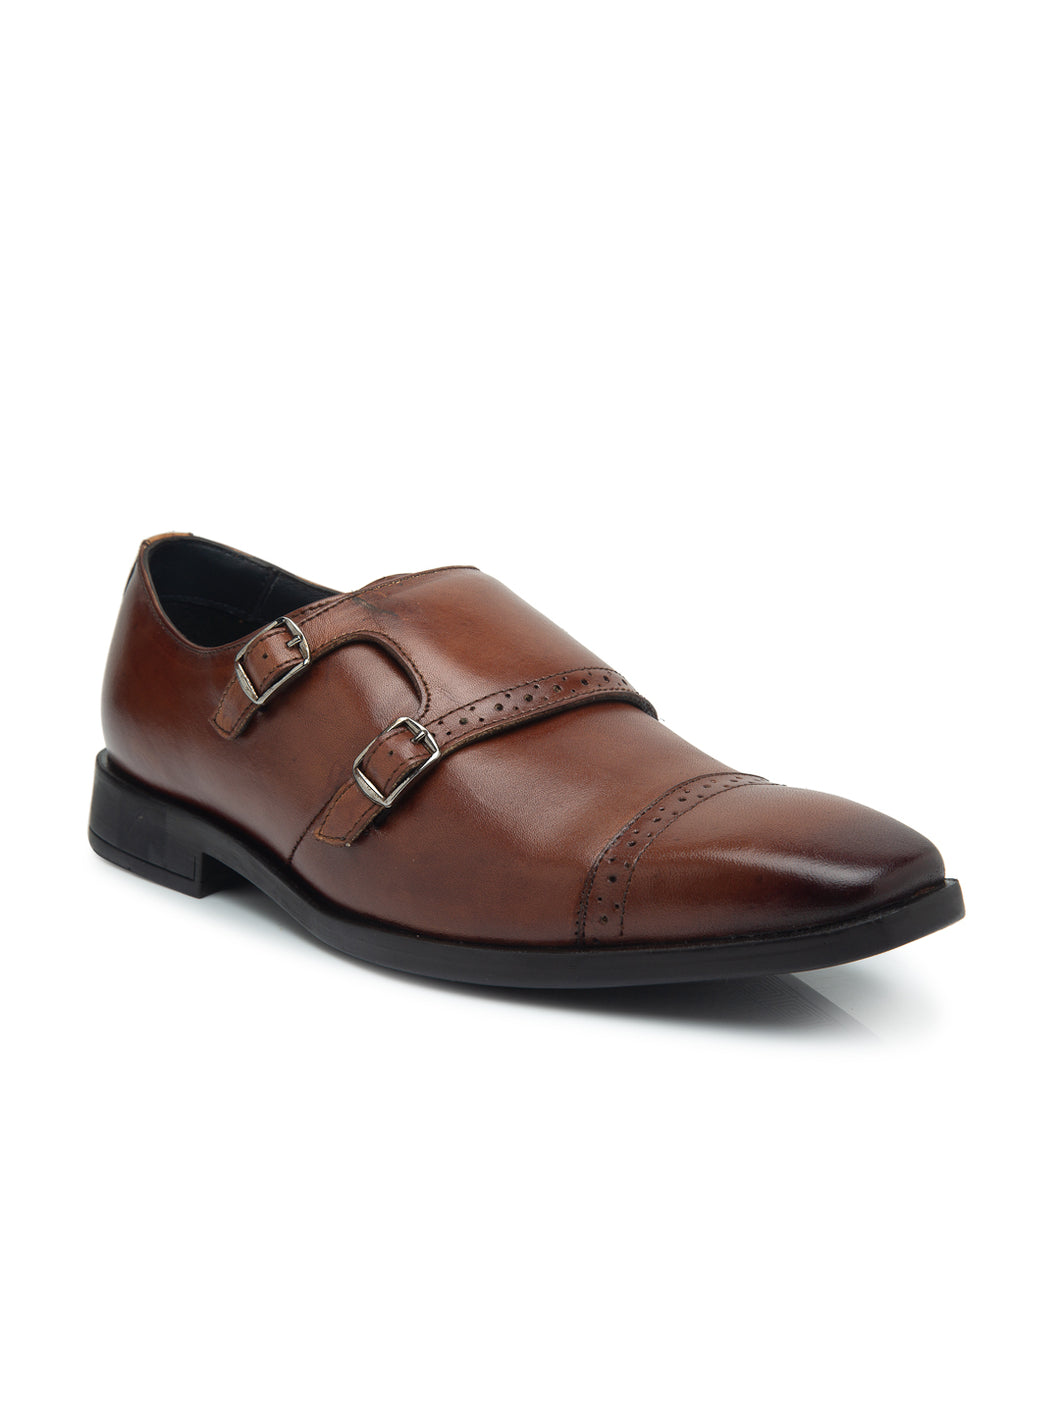 Teakwood Men Genuine Leather Double-Strap Monk Shoes(COGNAC)